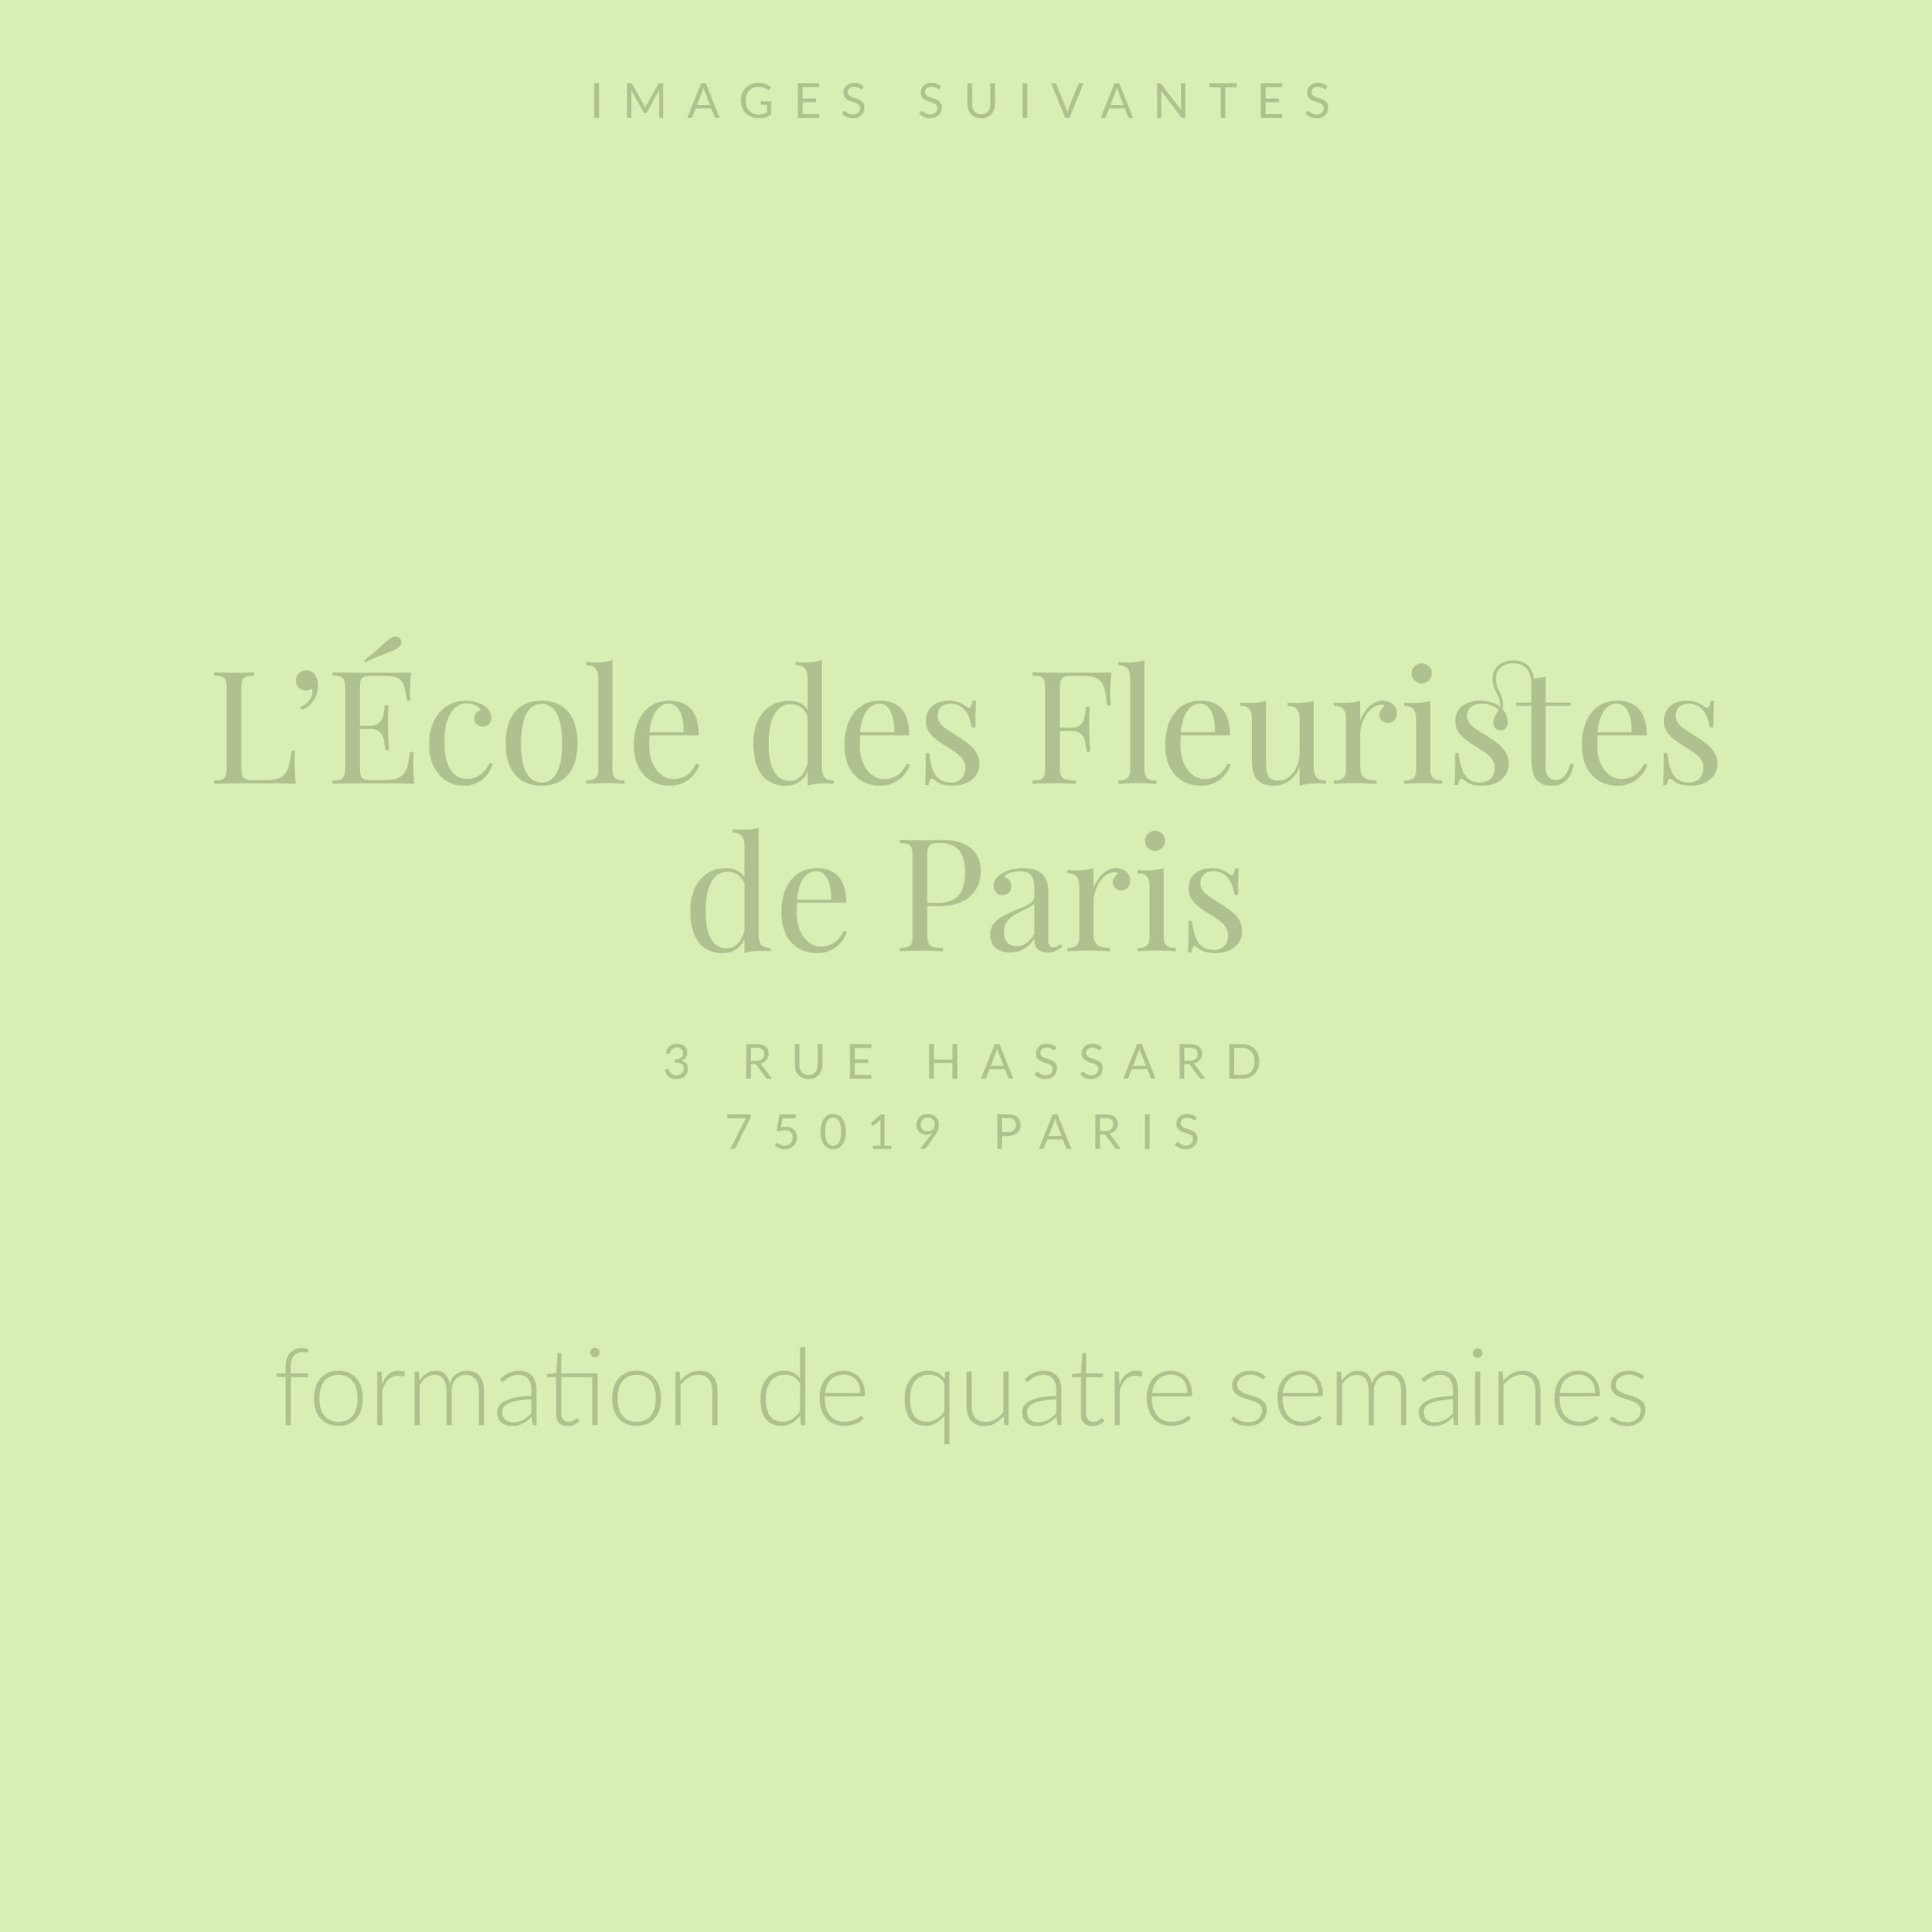 Compositions créées en formation à l'École des Fleuristes de Paris, décembre 2021